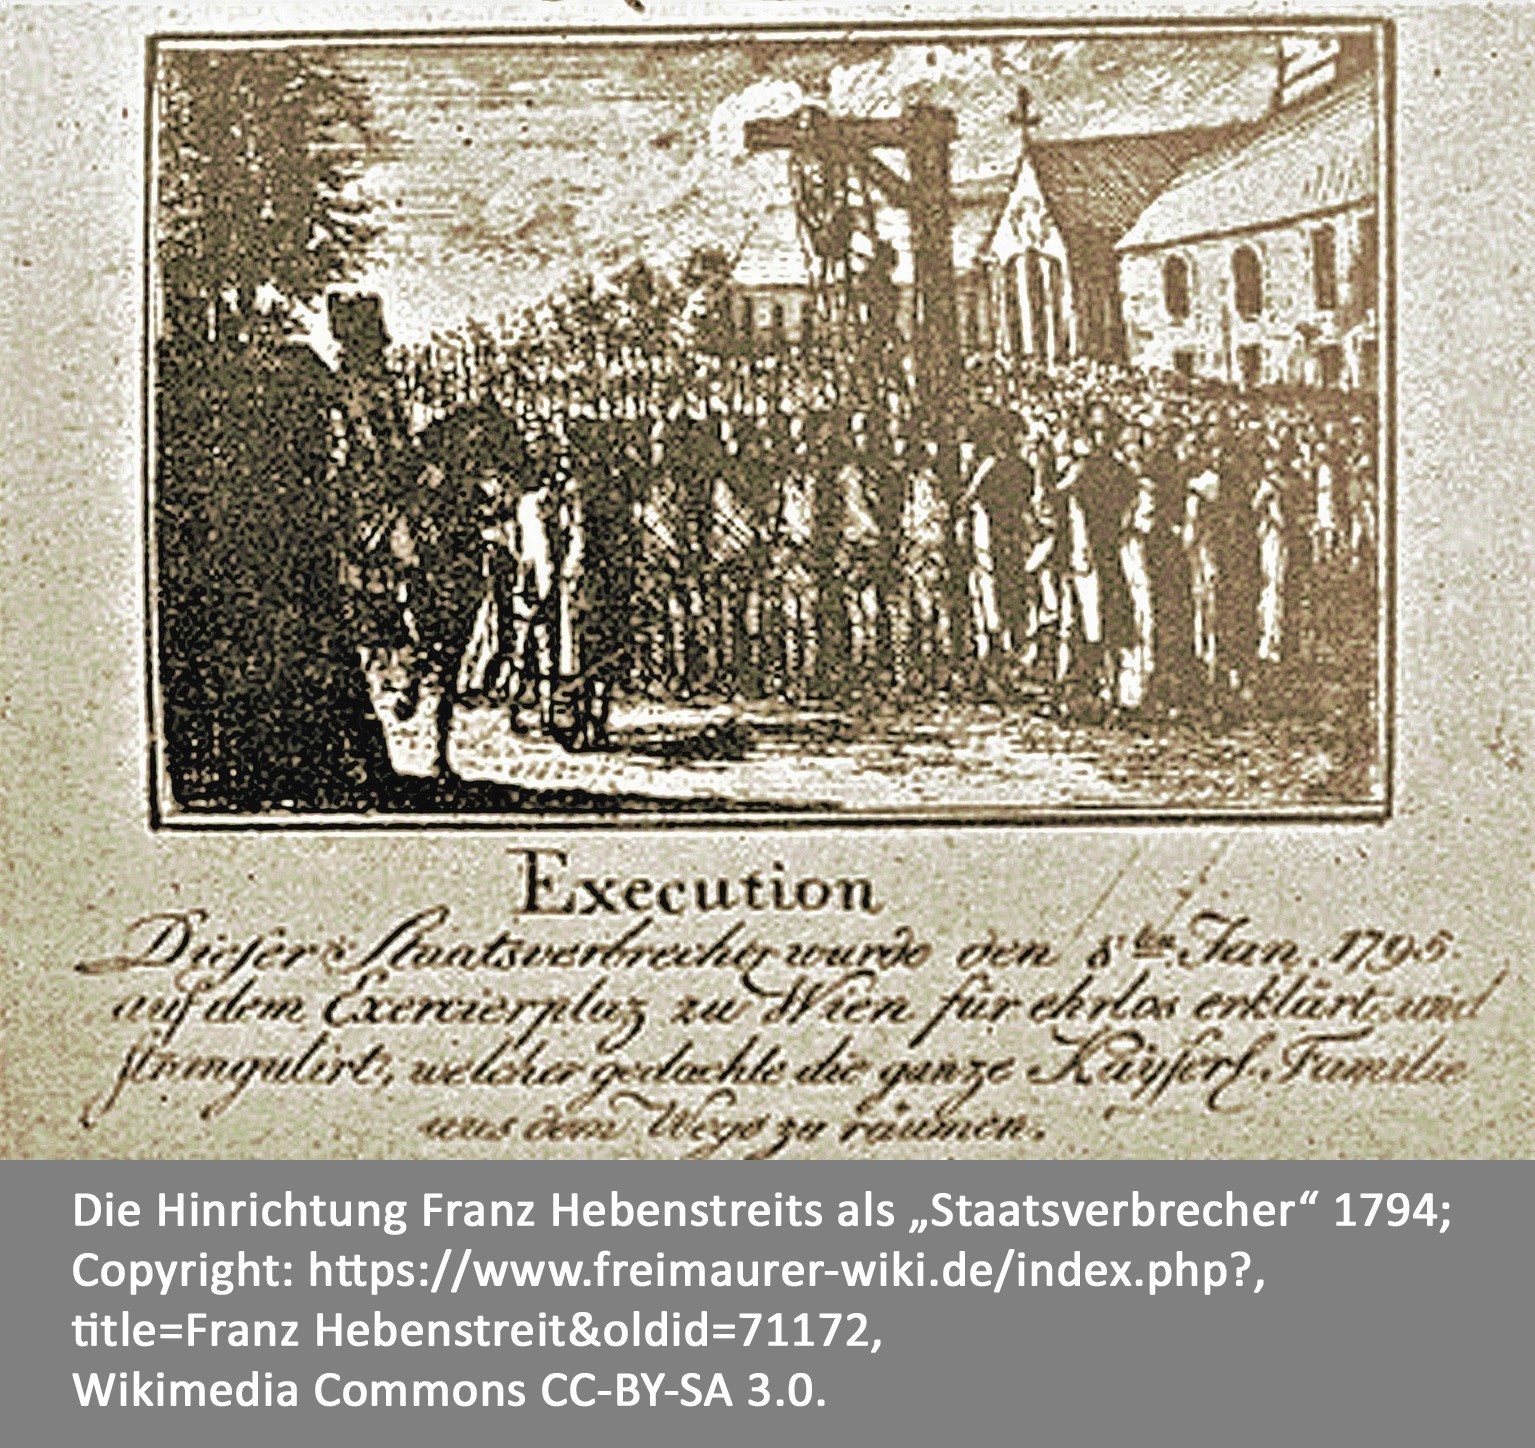 Flugblatt mit Zeichnung von der Hinrichtung Hebenstreits.